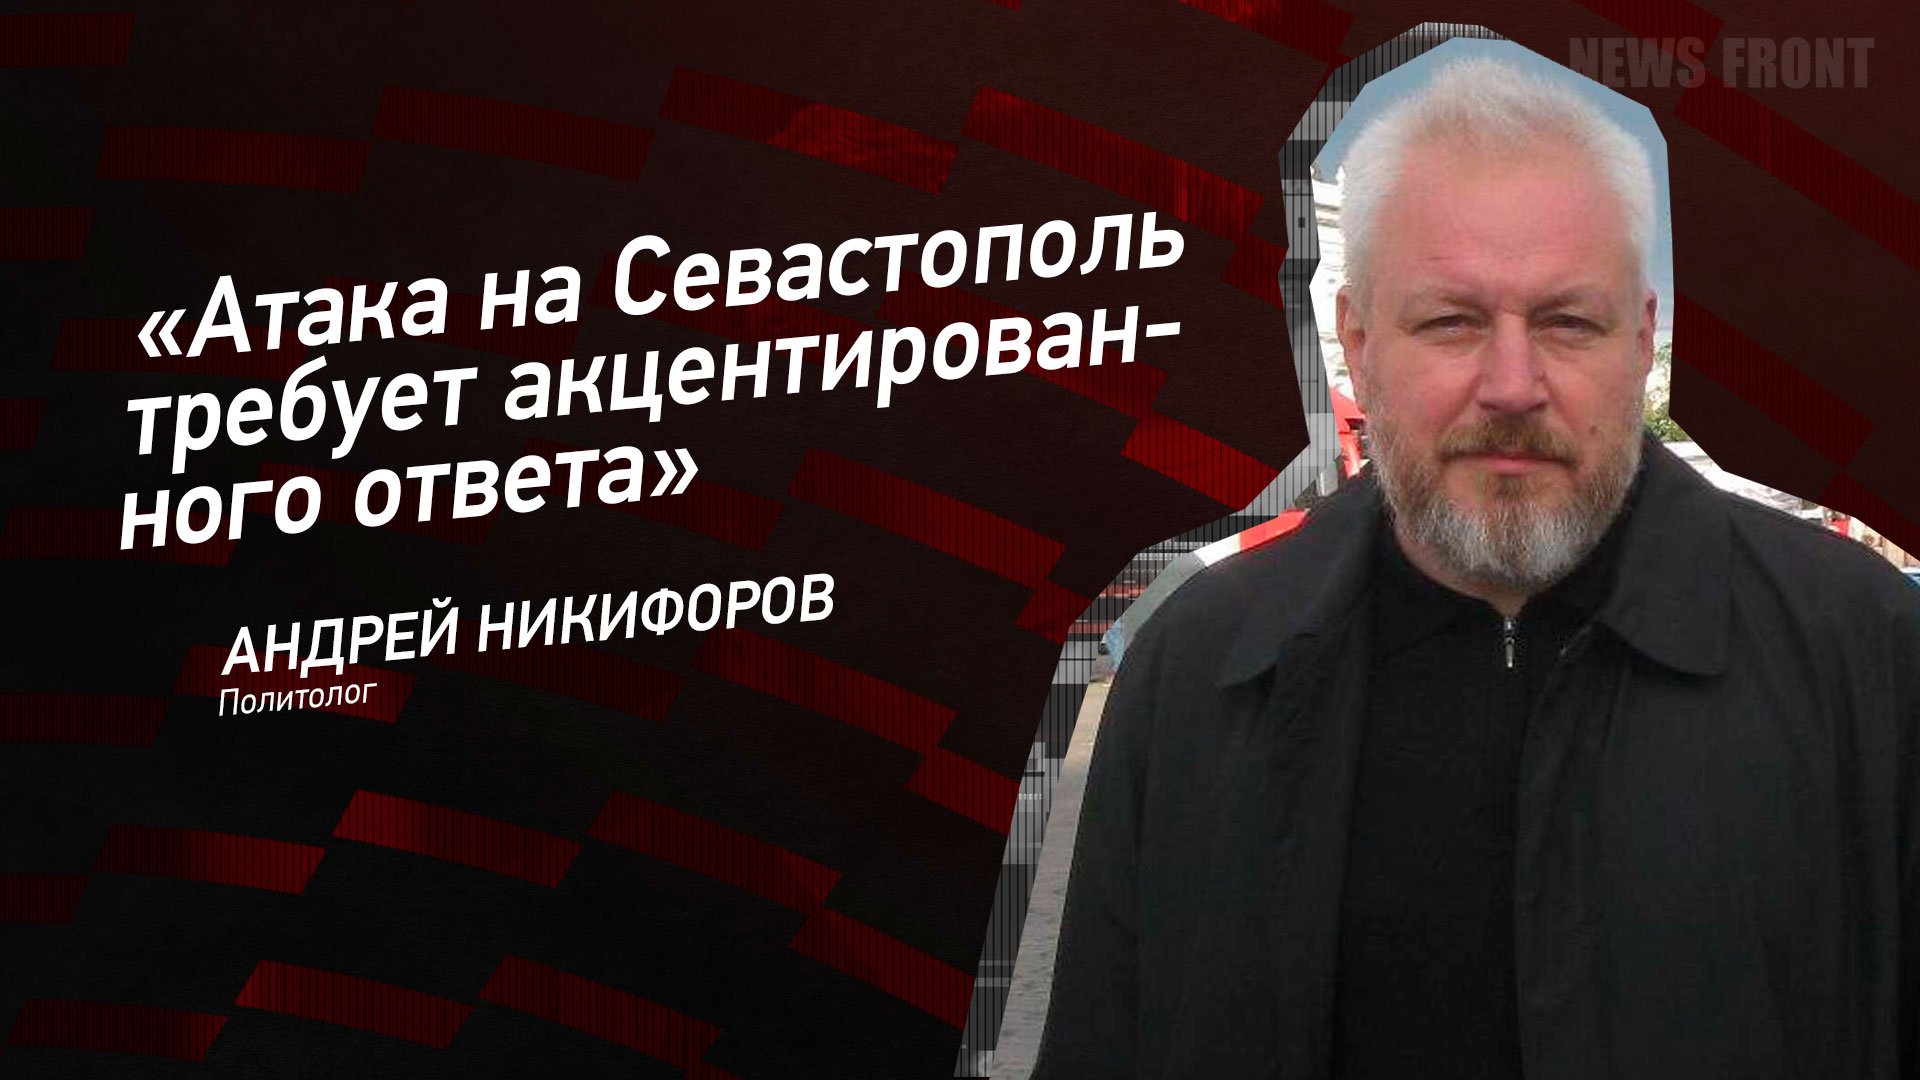 "Атака на Севастополь требует акцентированного ответа" - Андрей Никифоров